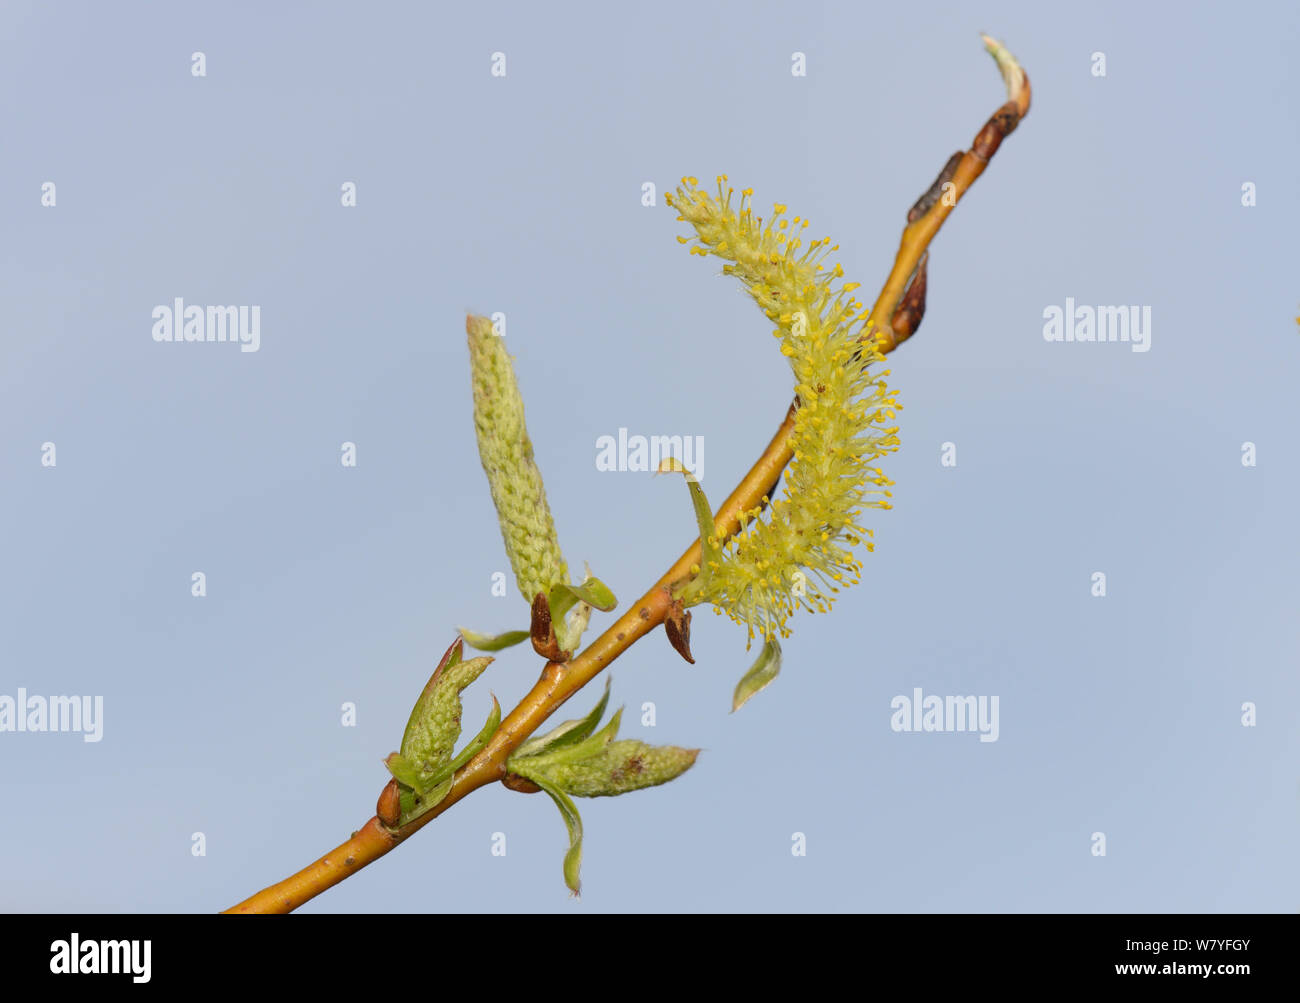 Golden saule pleureur (Salix x sepulcralis) chatons, Wiltshire, UK, avril. Banque D'Images